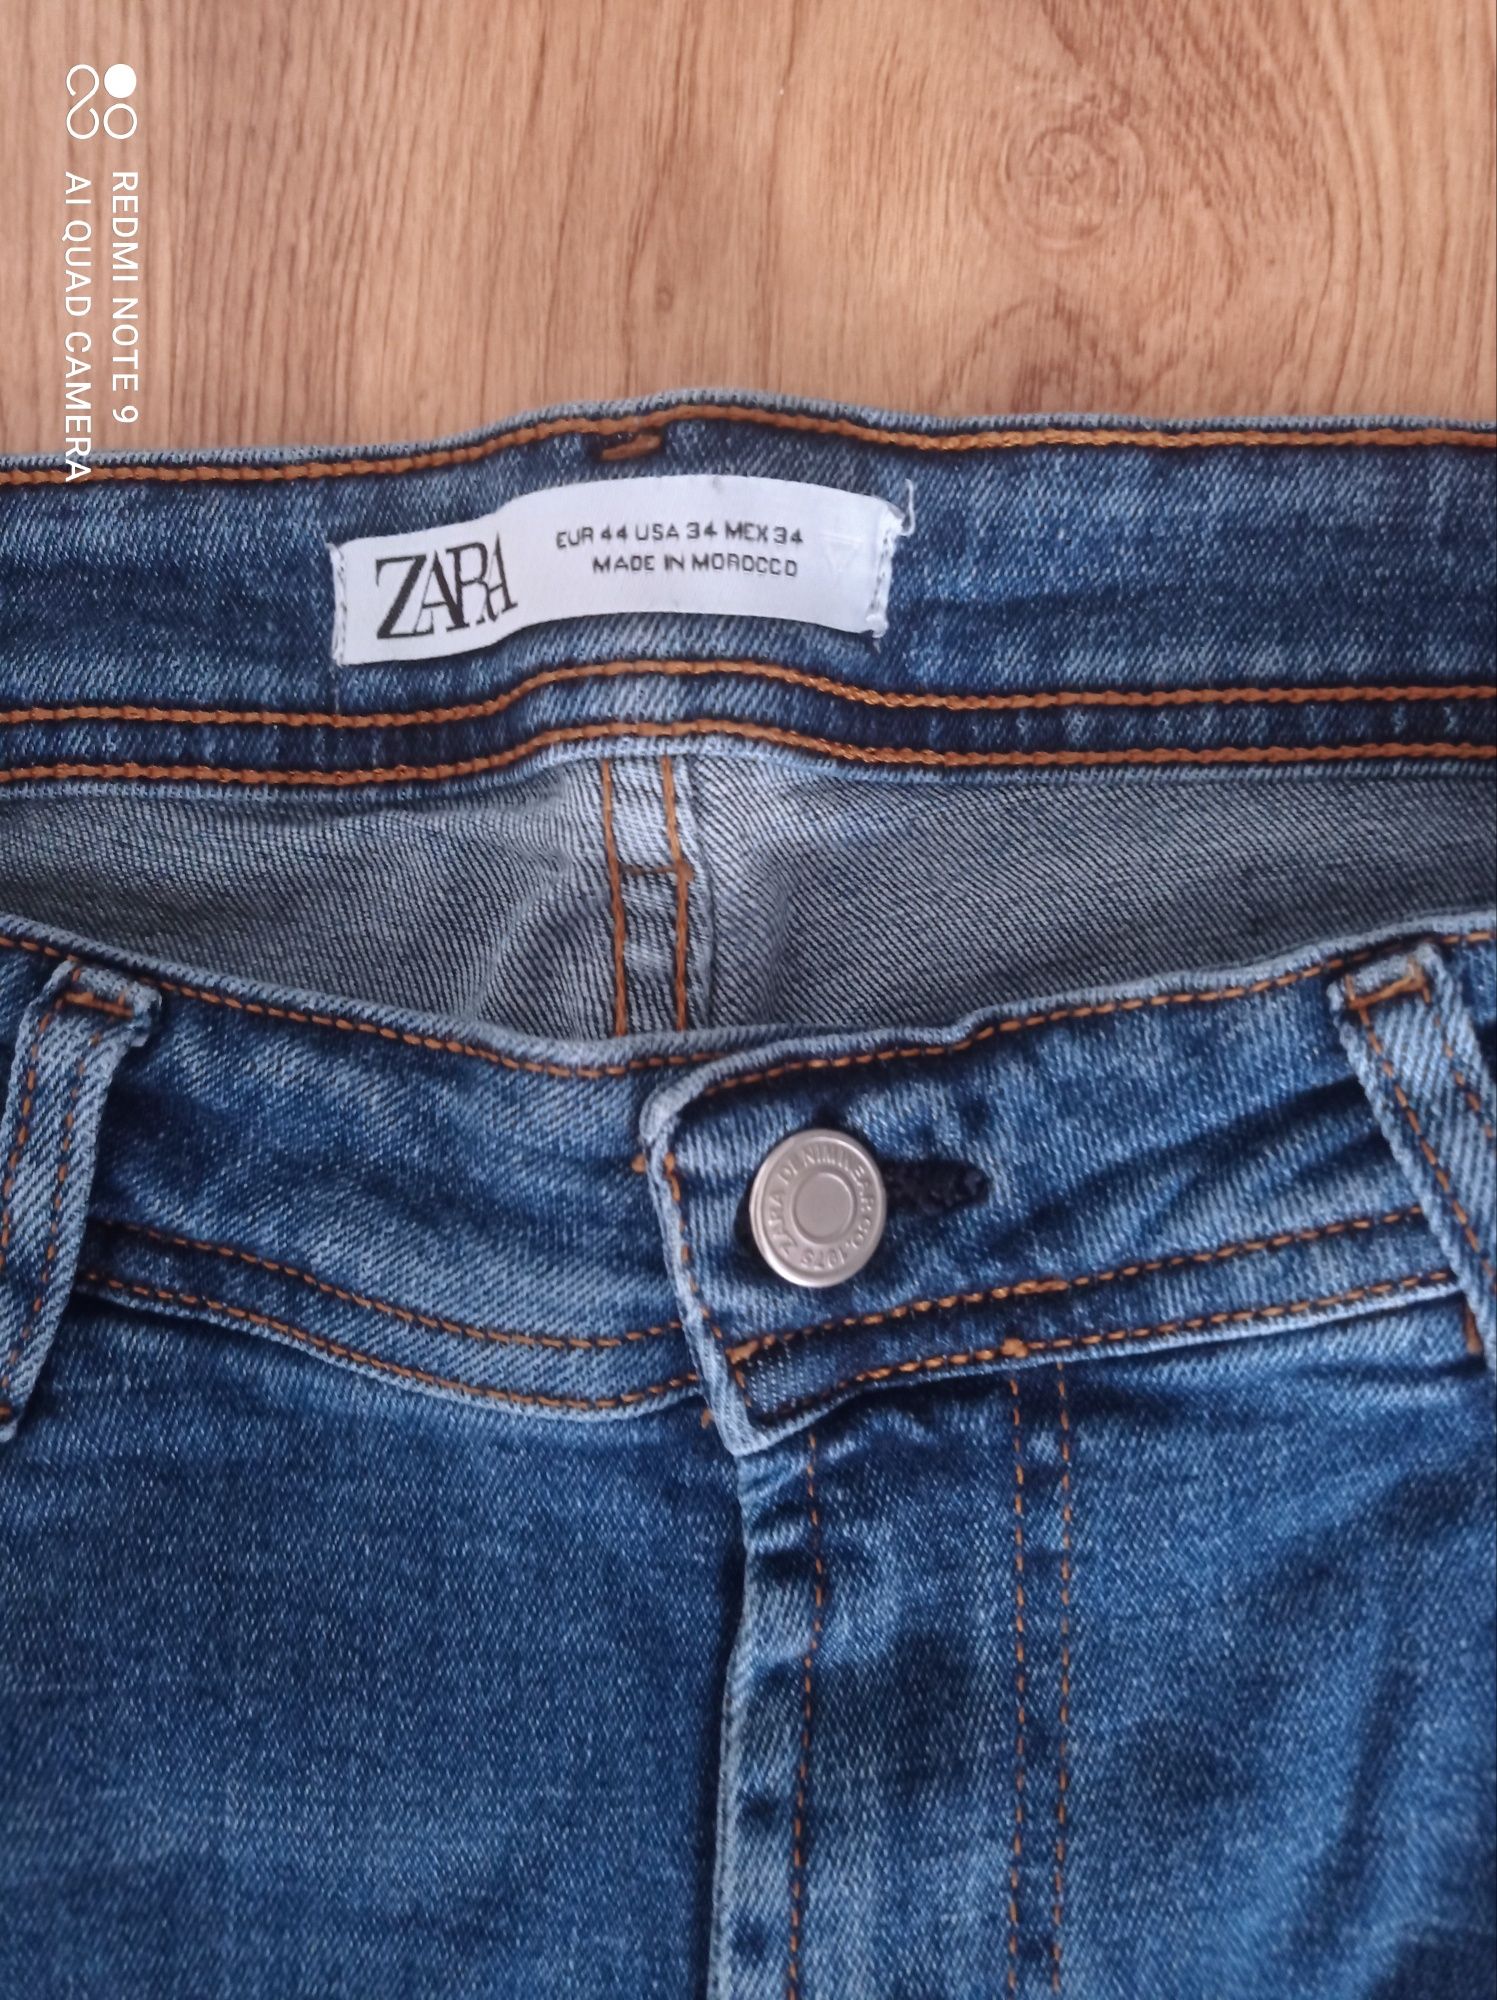 Spodnie jeansy chłopięce długie firmy Zara rozm 170-176